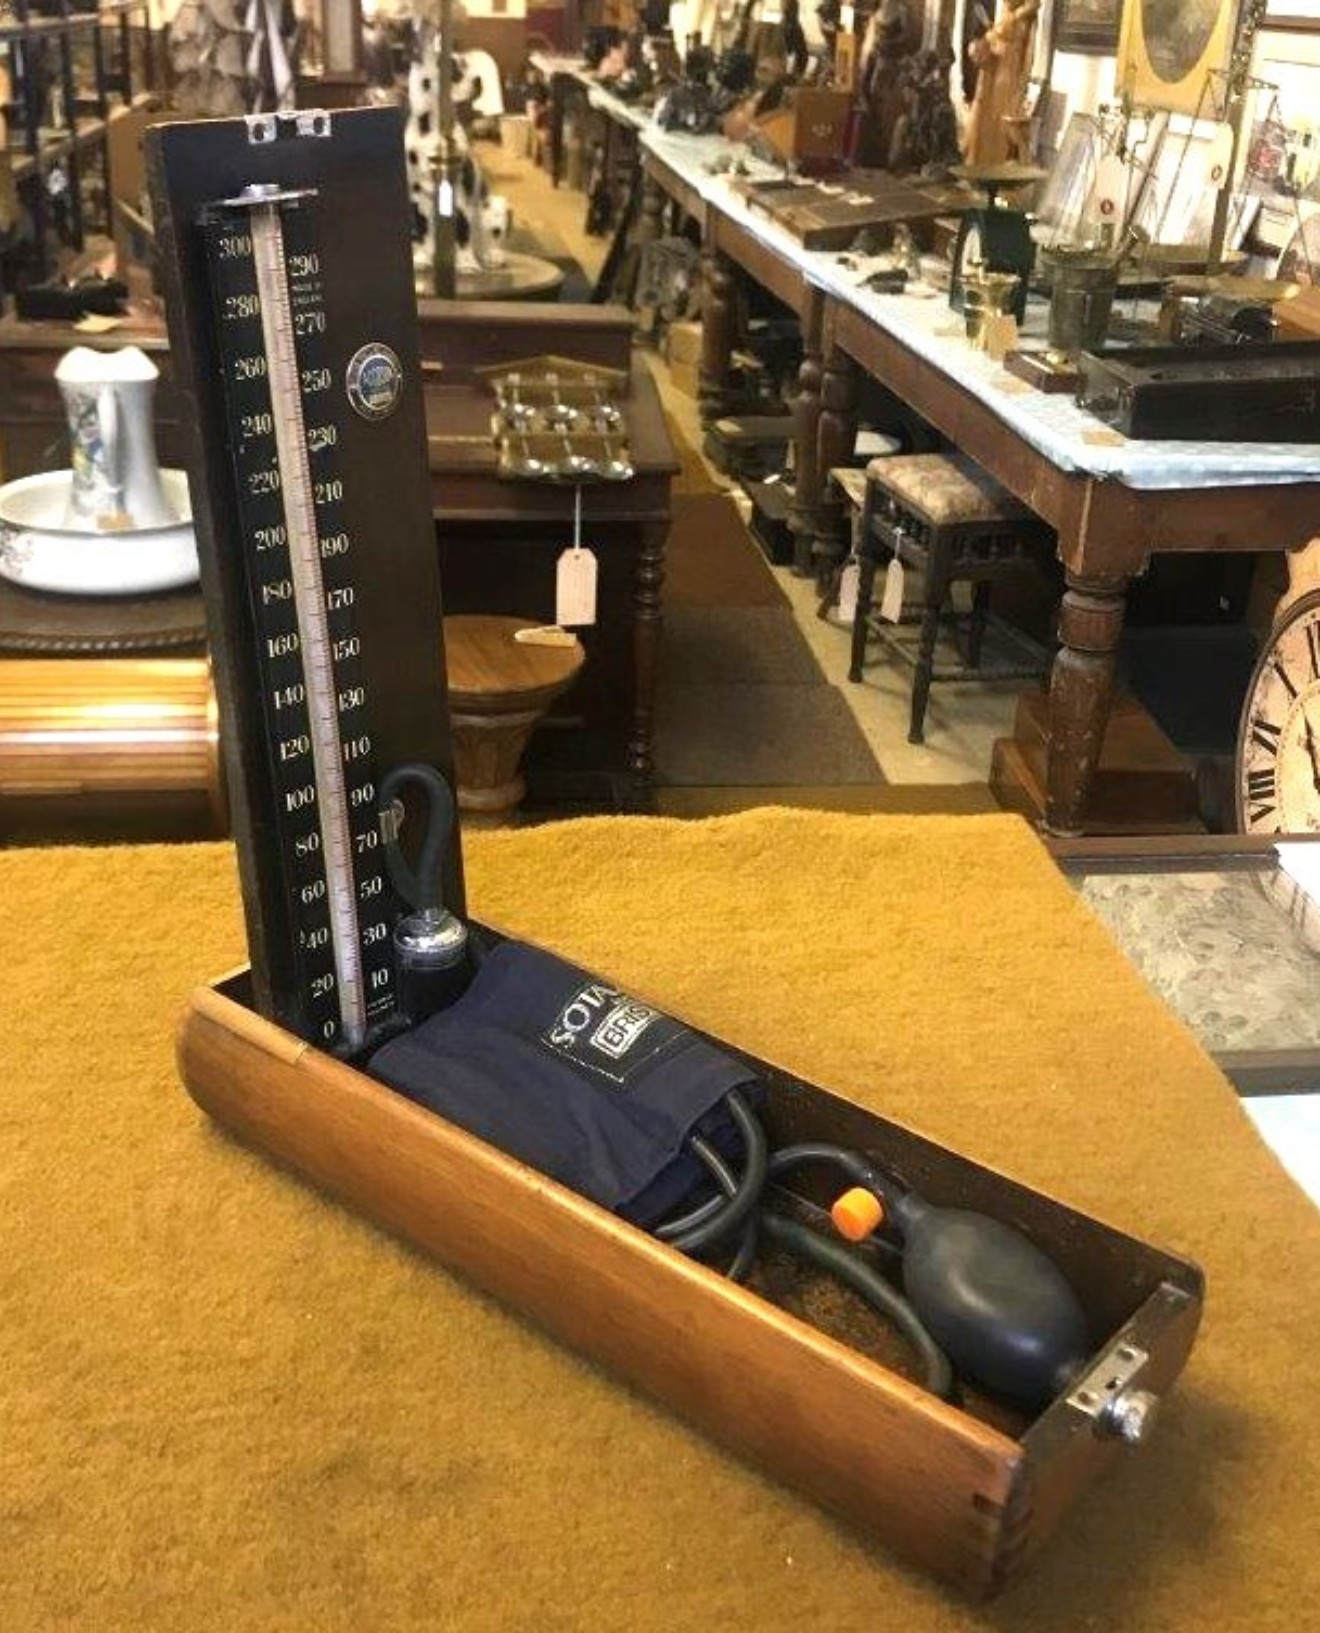 Vintage Sphygmomanometer, Blood Pressure Monitor, Measuring Blood